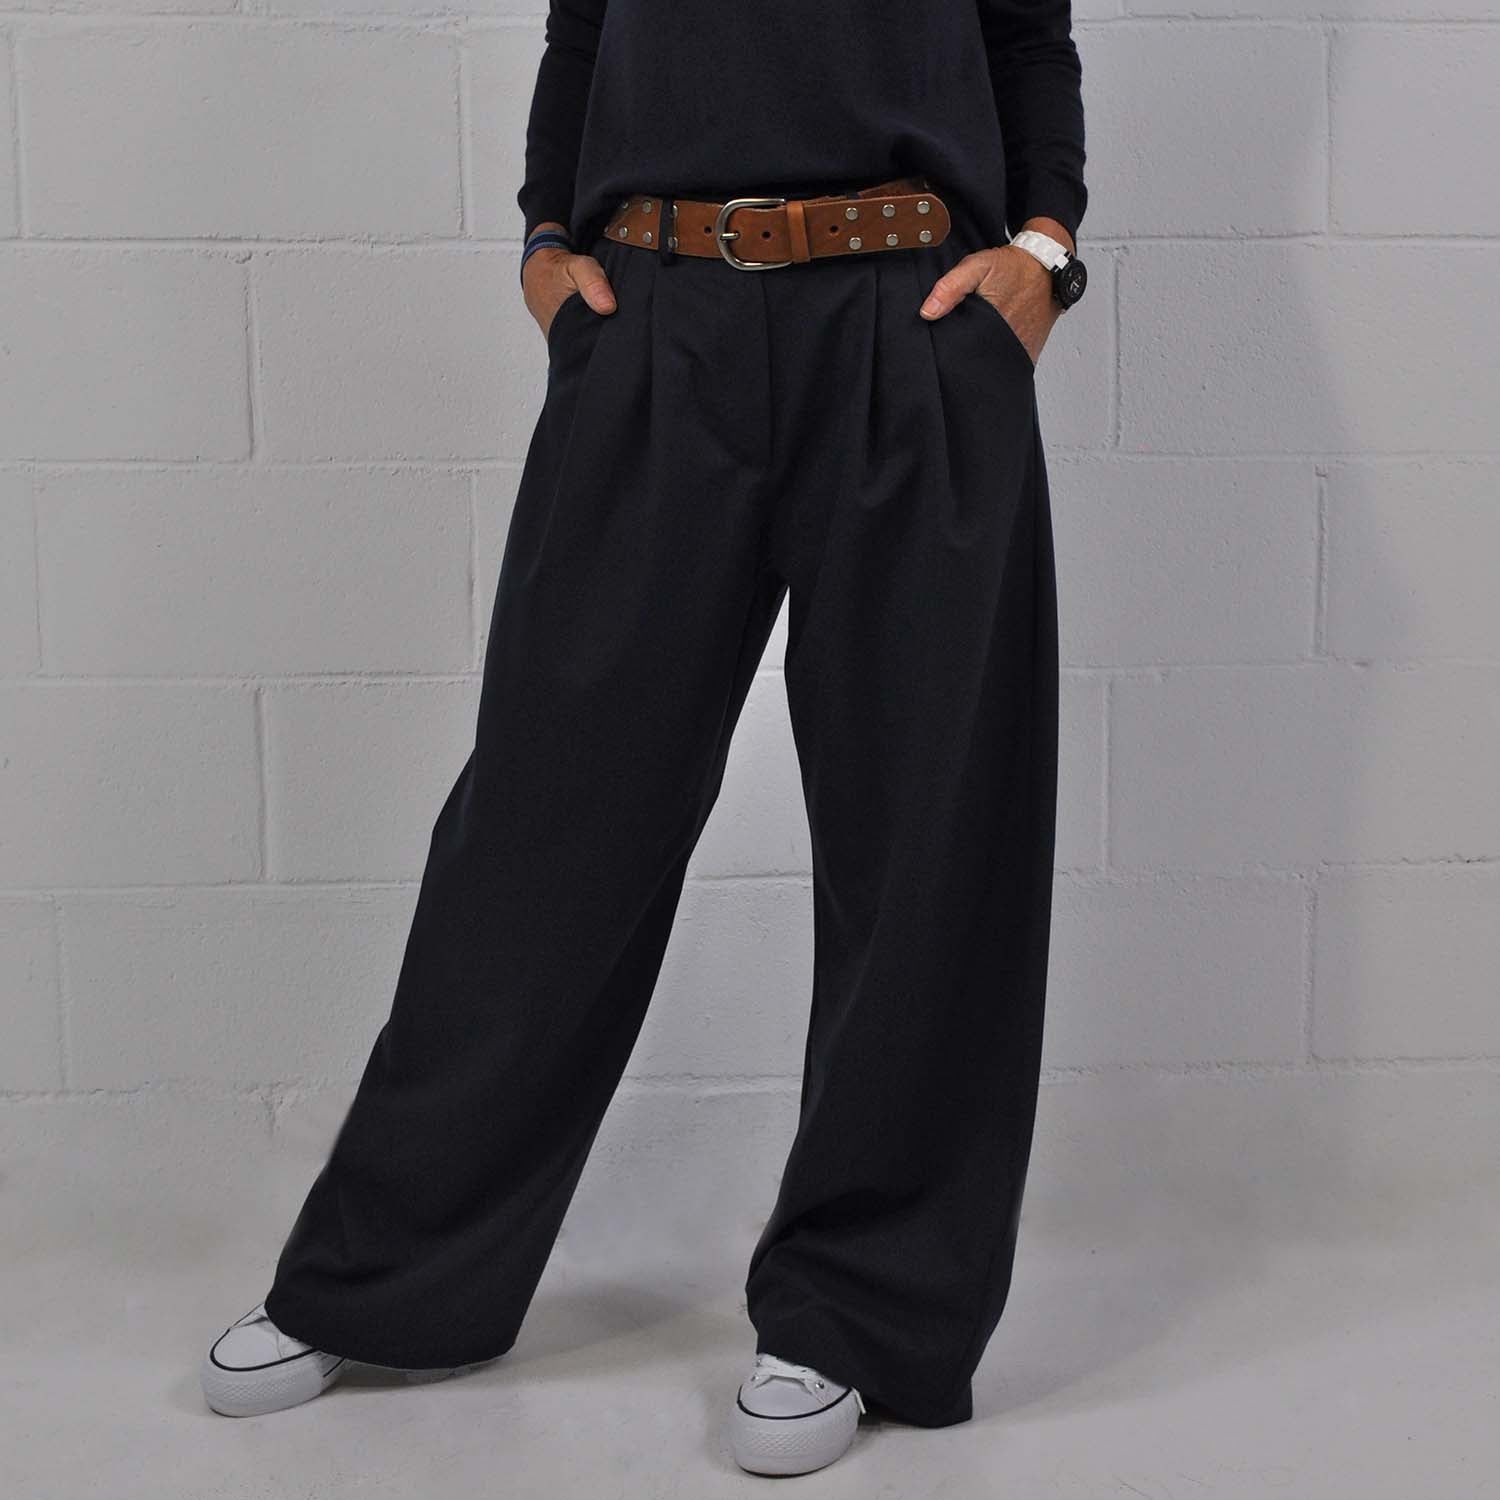 Pantalon large femme chic jersey italien imprimé Montauk I BLEU D'AZUR